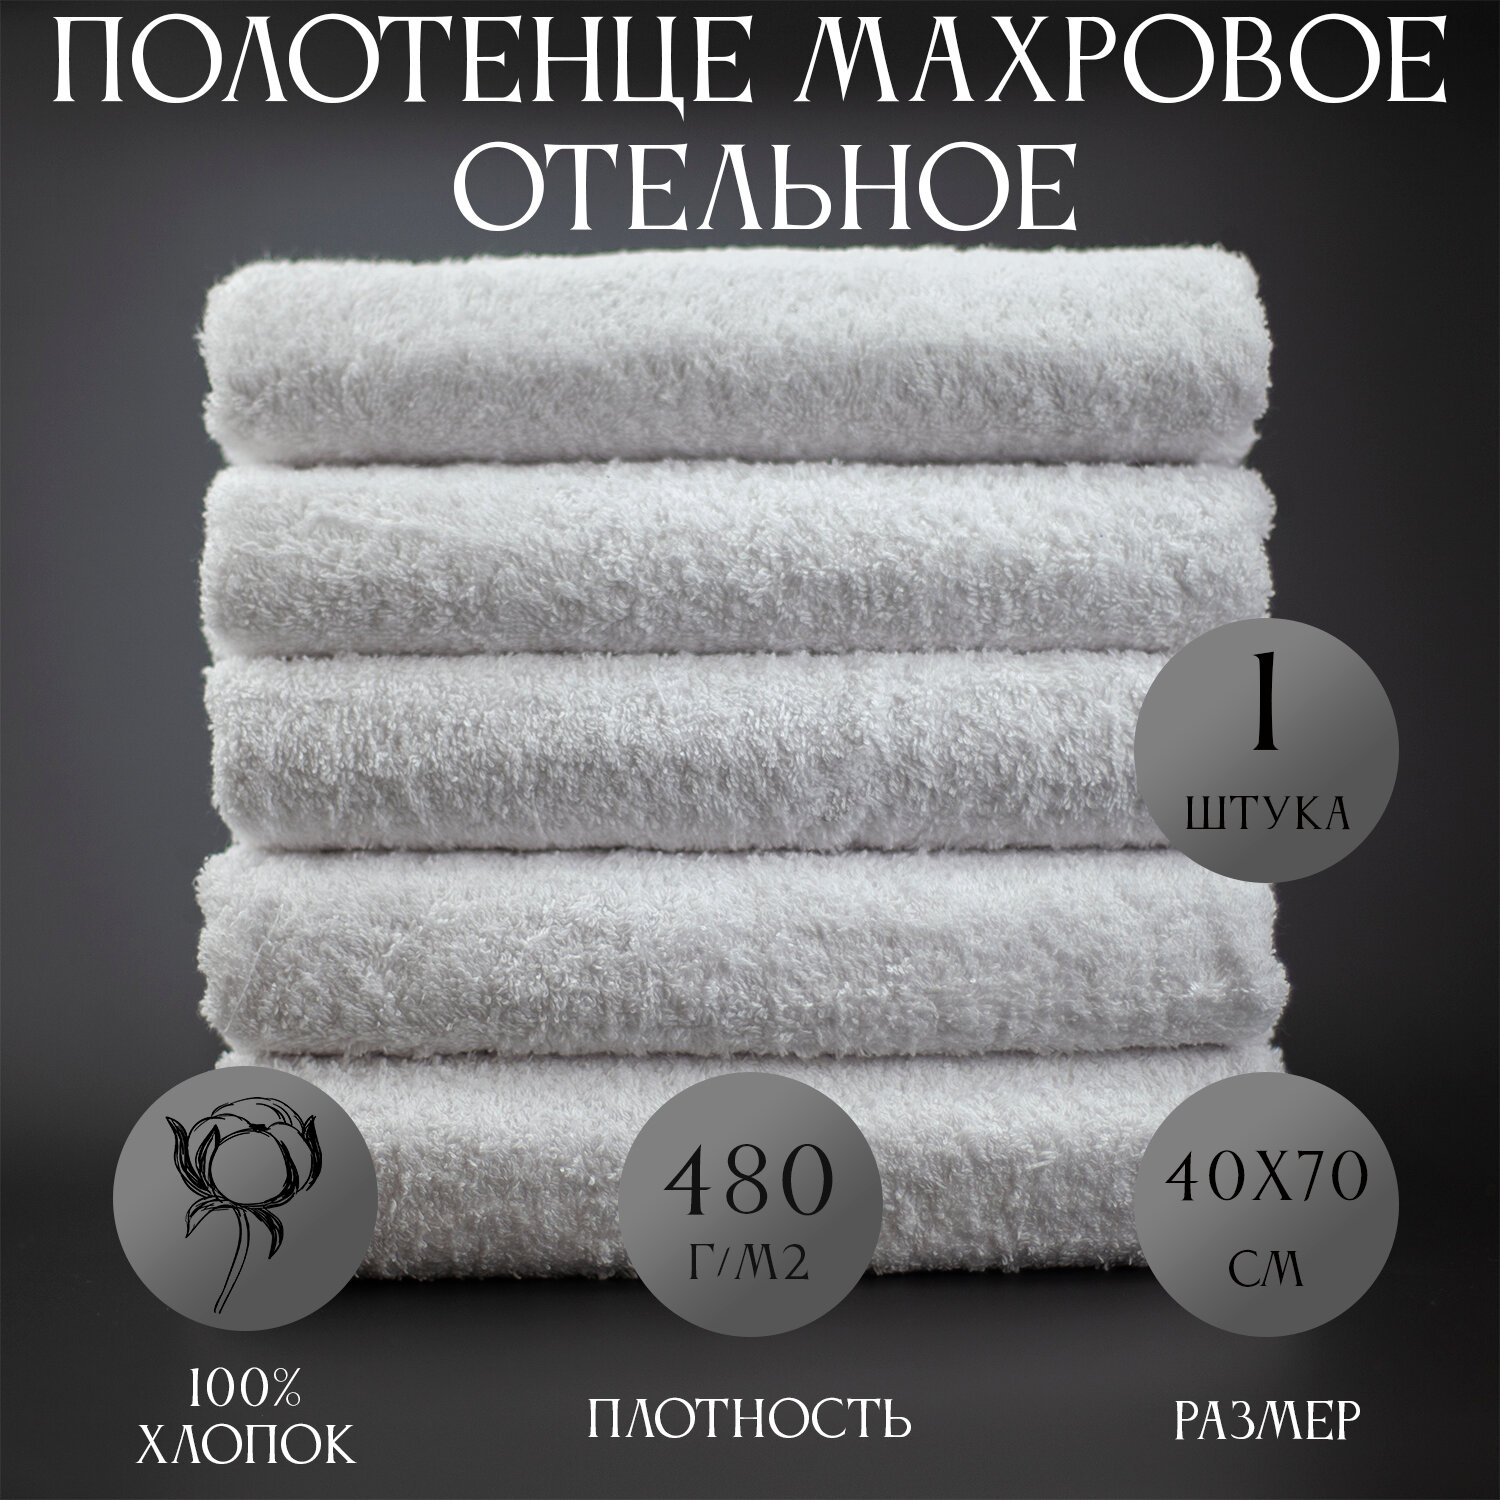 Полотенце махровое Отельное белое 480гр (40х70 см), 100% хлопок, 1шт белое.